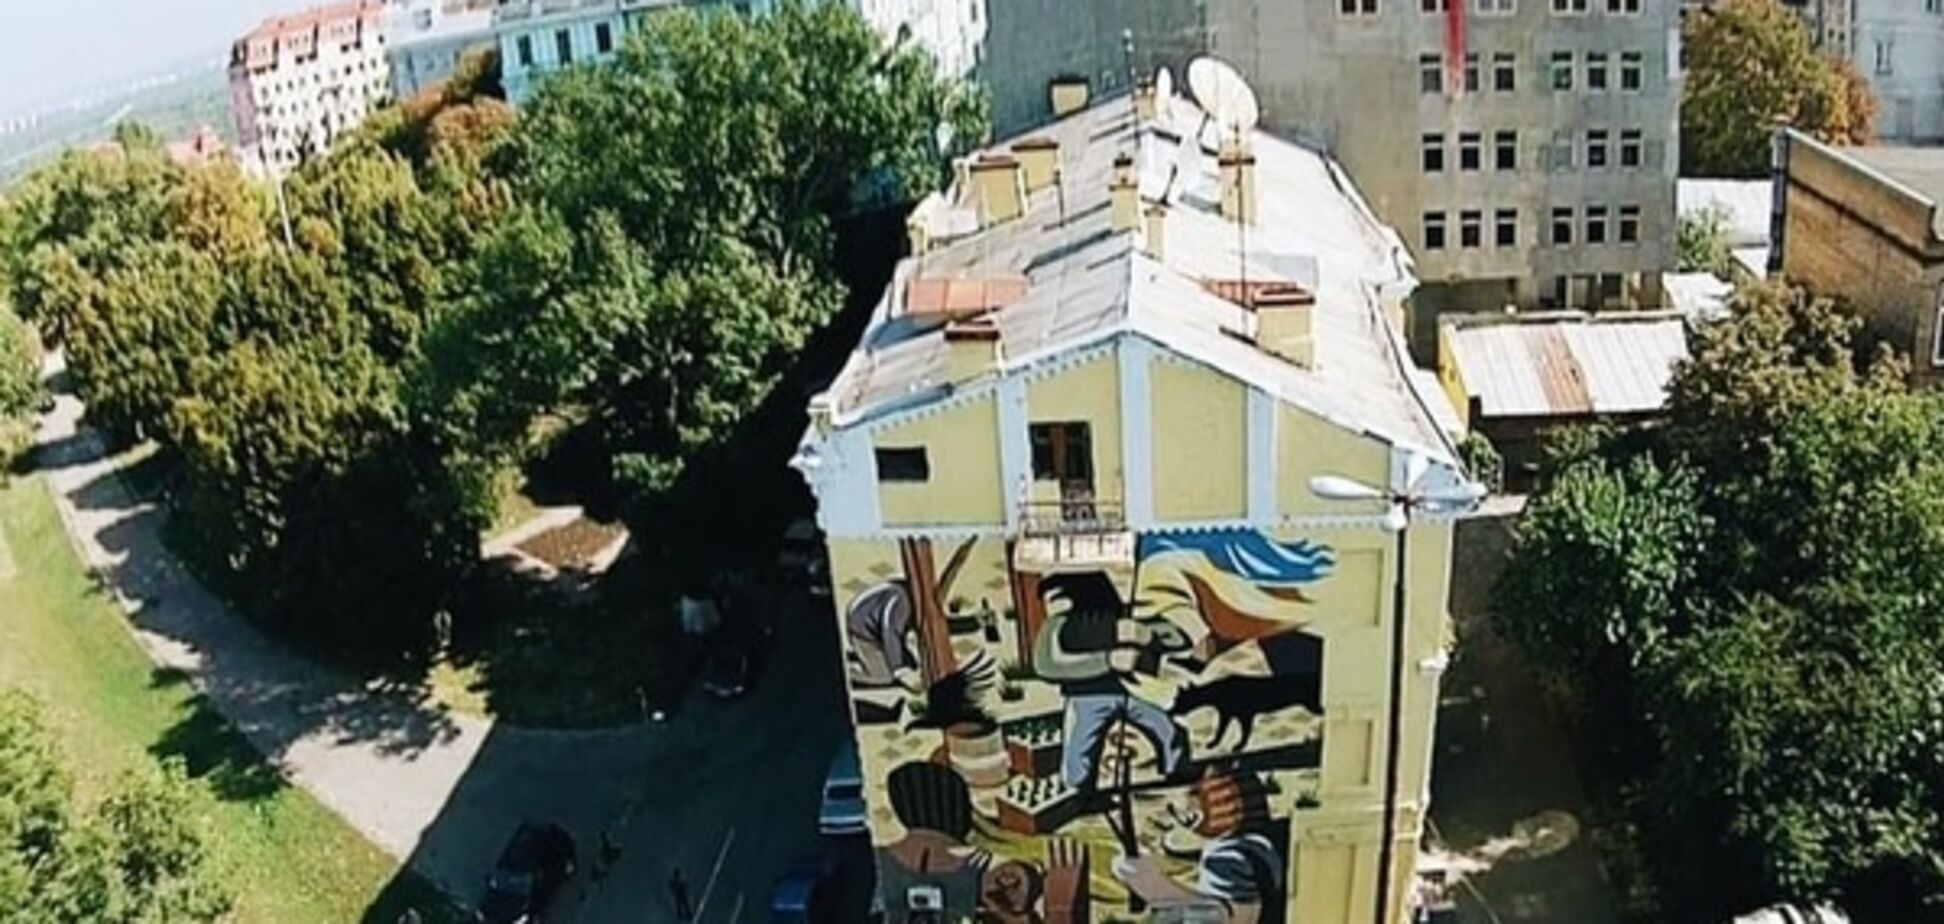 В соцсети появилось фото скандального мурала в центре Киева